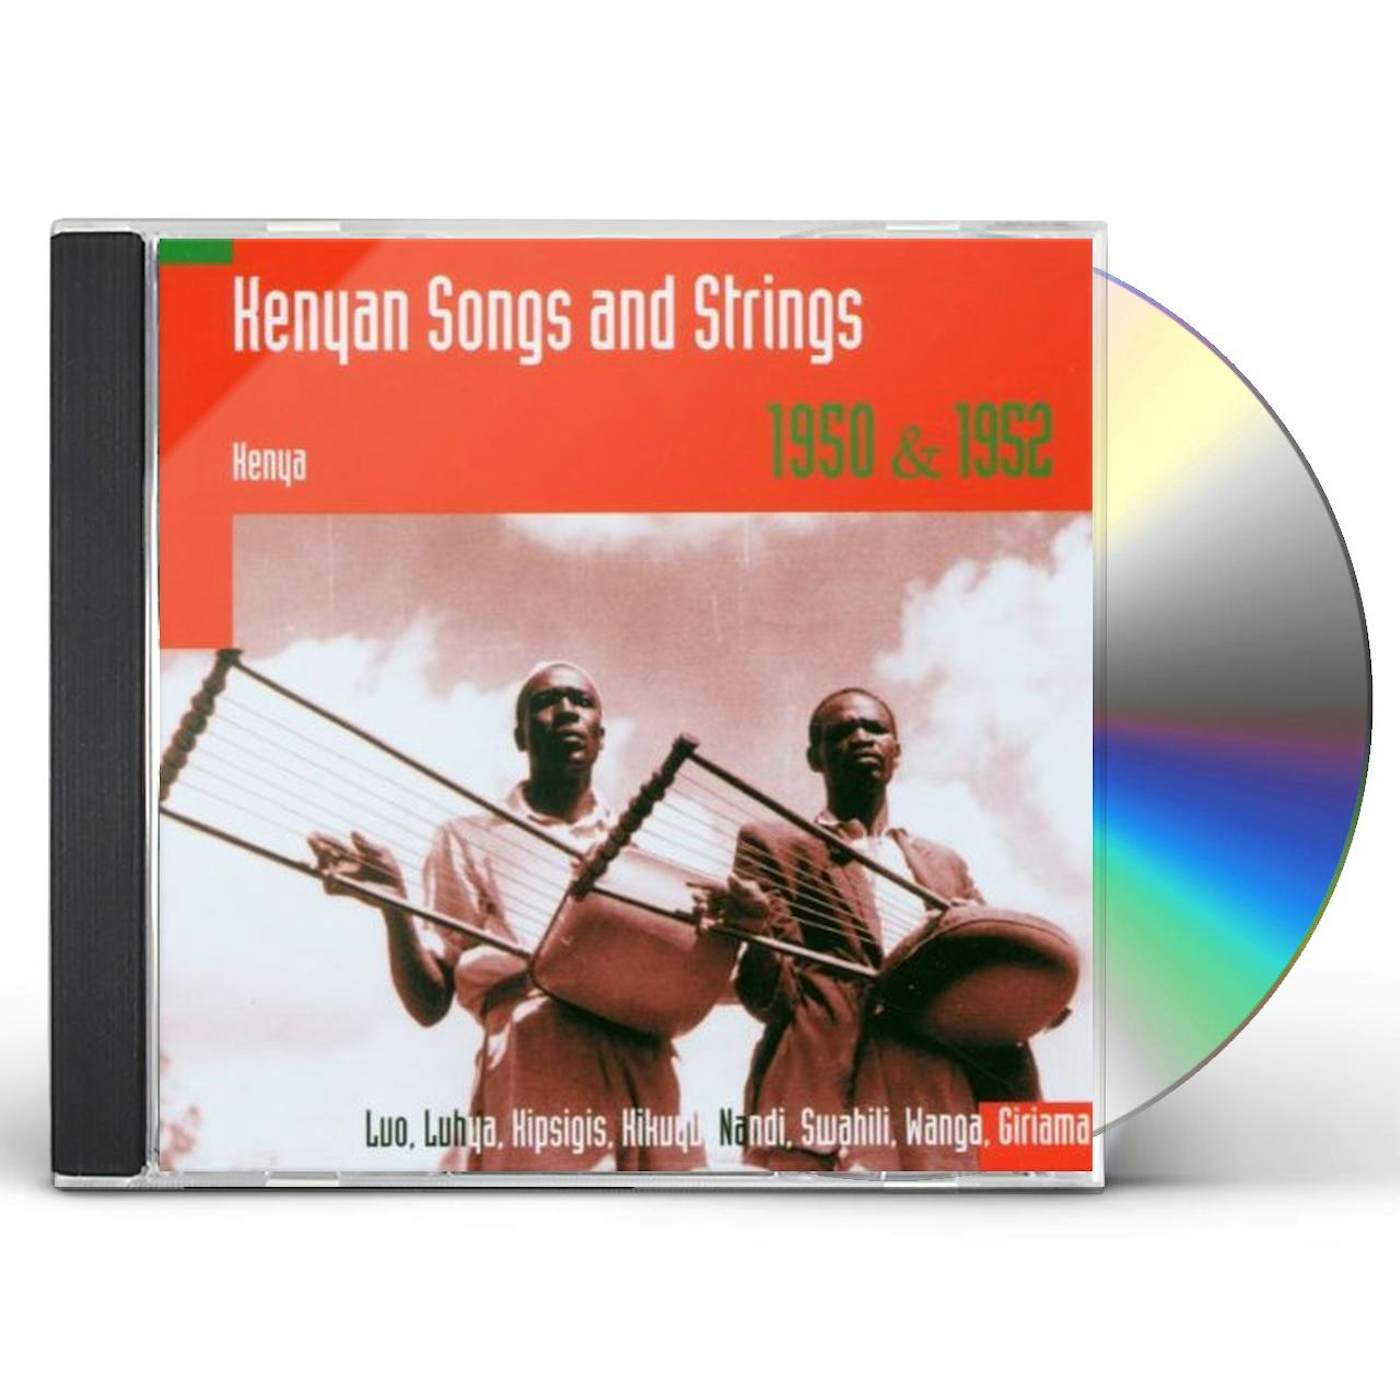 Hugh Tracey KENYAN SONGS & STRINGS: KENYA 1950 & 1952 CD